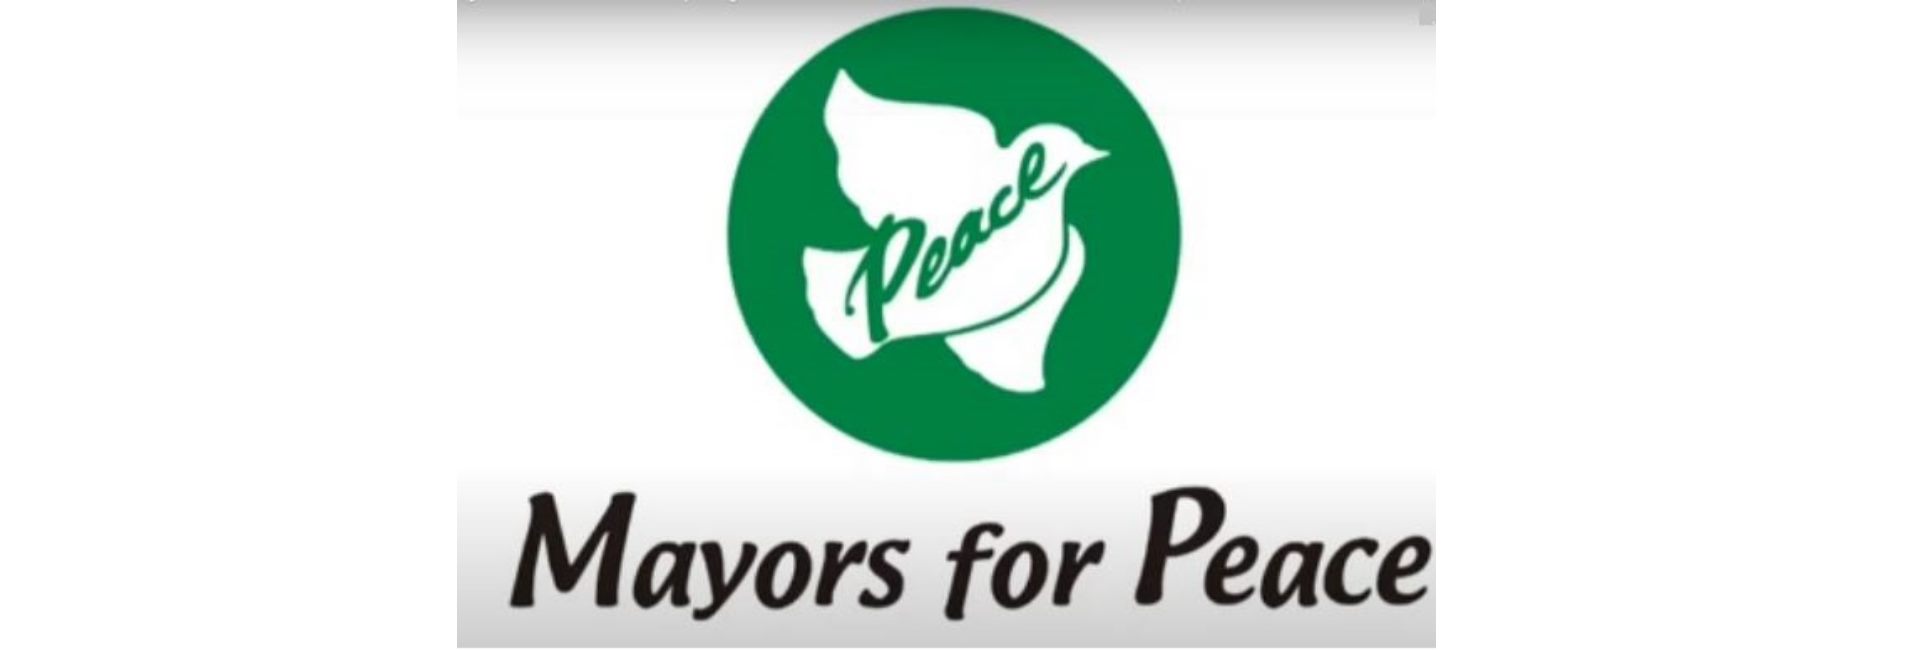 A Câmara Municipal de Vila Viçosa adere à Organização “Mayors for Peace”